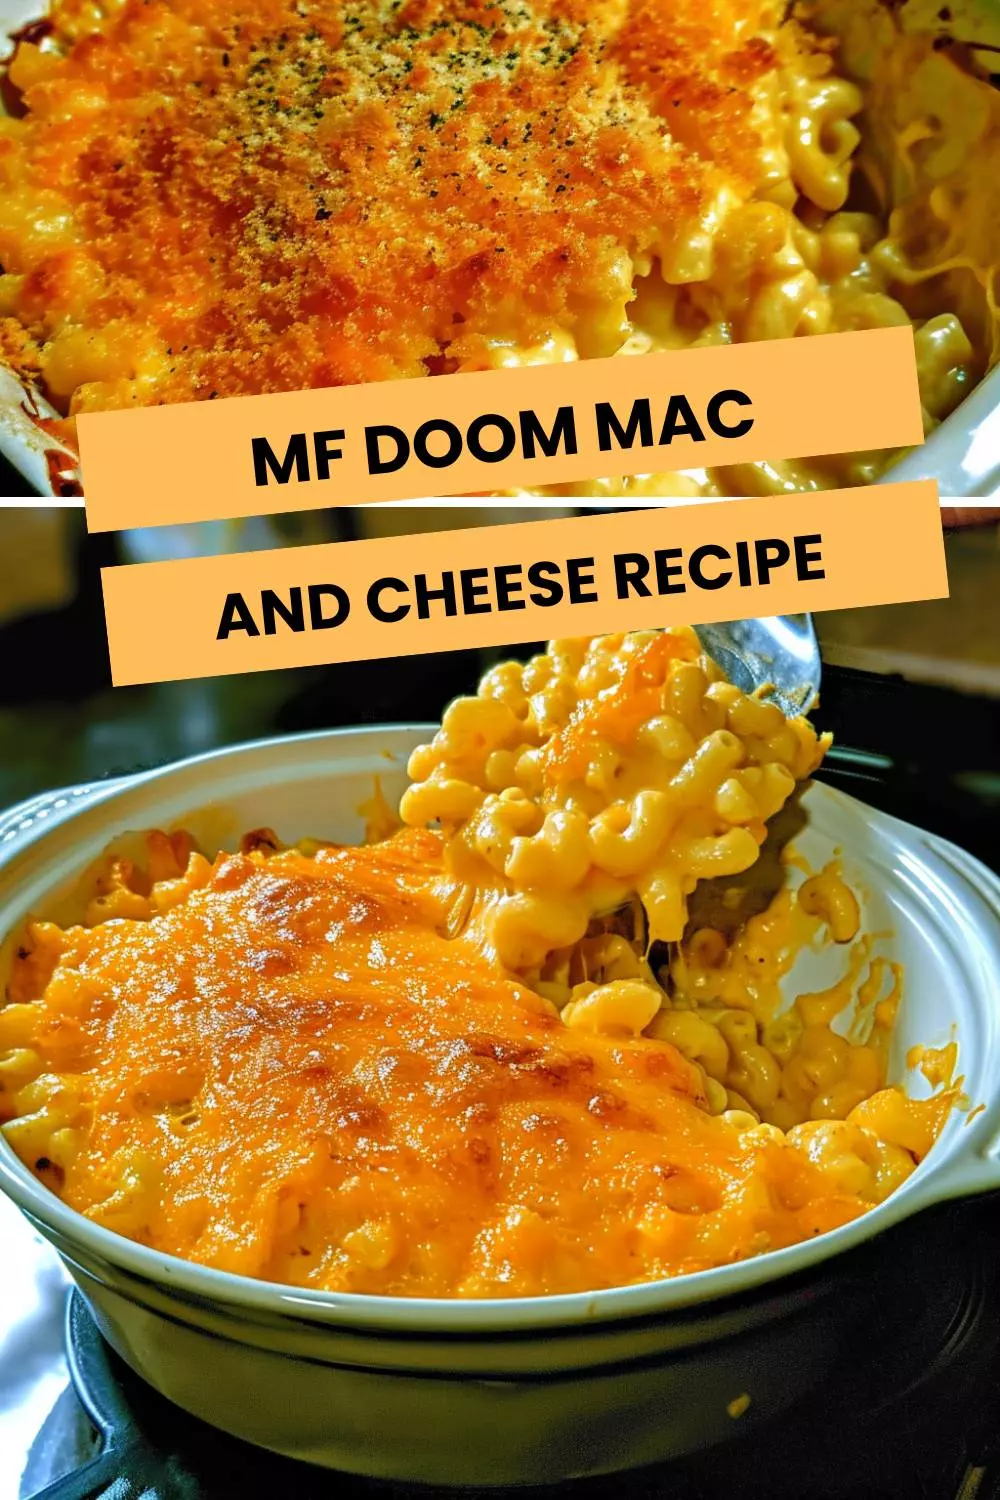 mf doom mac and cheese recipe